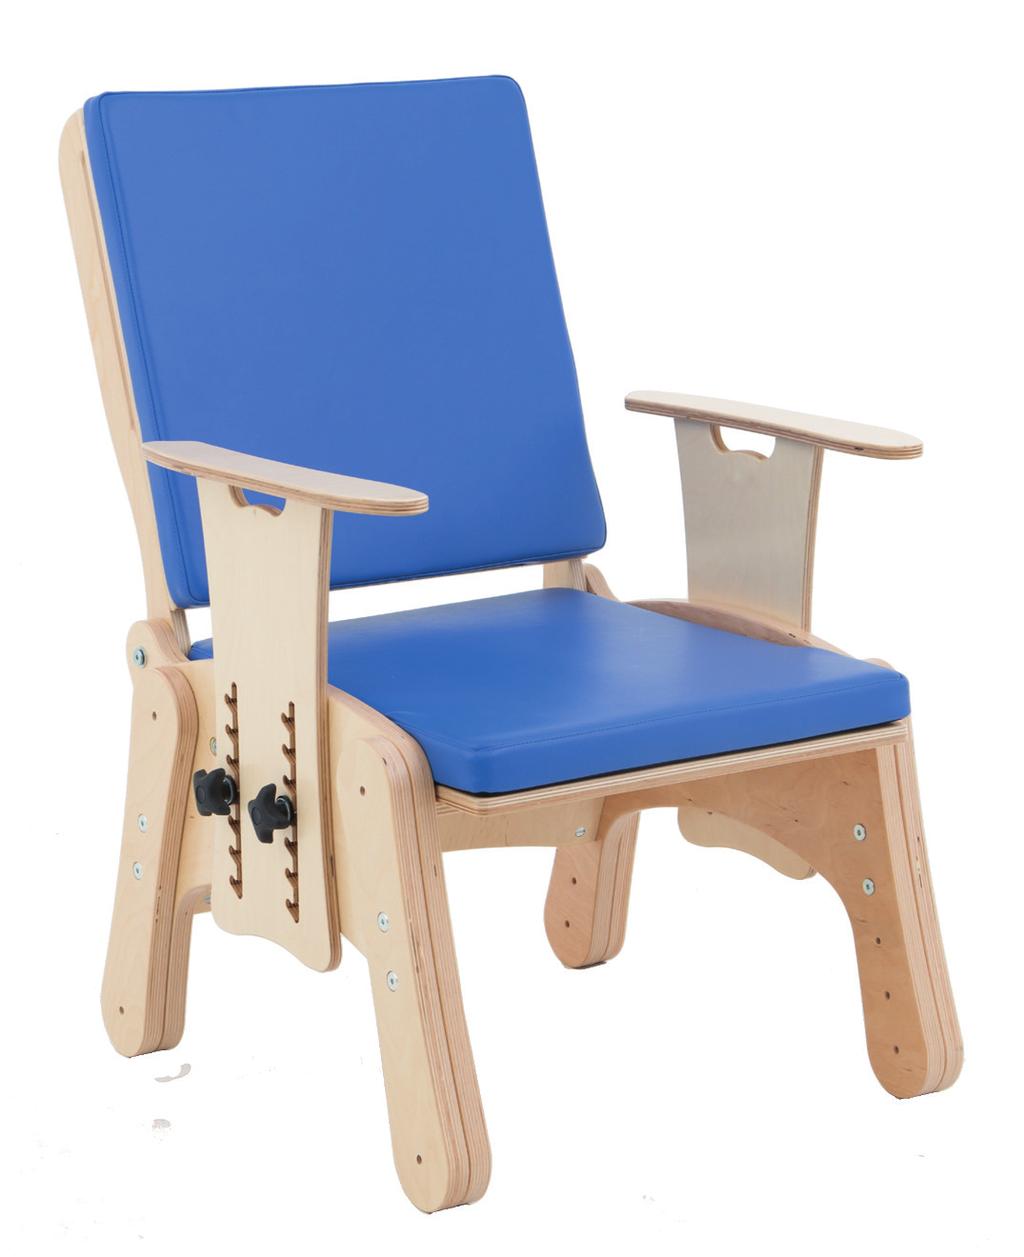 fotelik rehabilitacyjny jest krzesełkiem terapeutycznym, które doskonale sprawdza się podczas terapii i zabawy, a także innych codziennych aktywności takich jak nauka czy spożywanie posiłków.